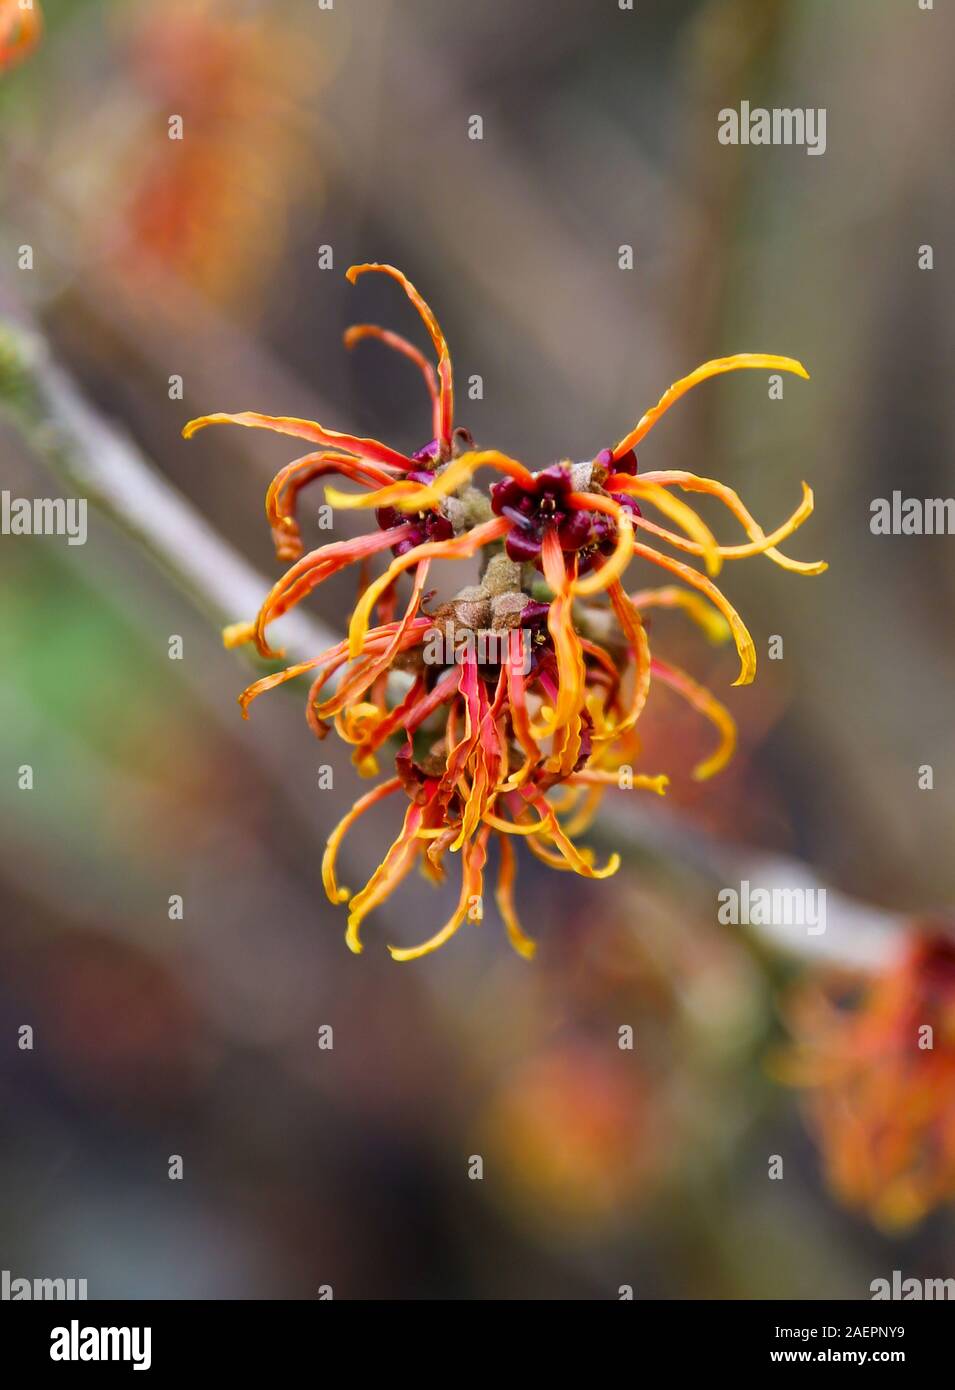 De près de l'orange/rouge fleurs d'une noisette de sorcière, hamamélis Hamamelis x intermedia 'Jelena' floraison d'hiver à feuilles caduques arbuste à fleurs, England, UK Banque D'Images